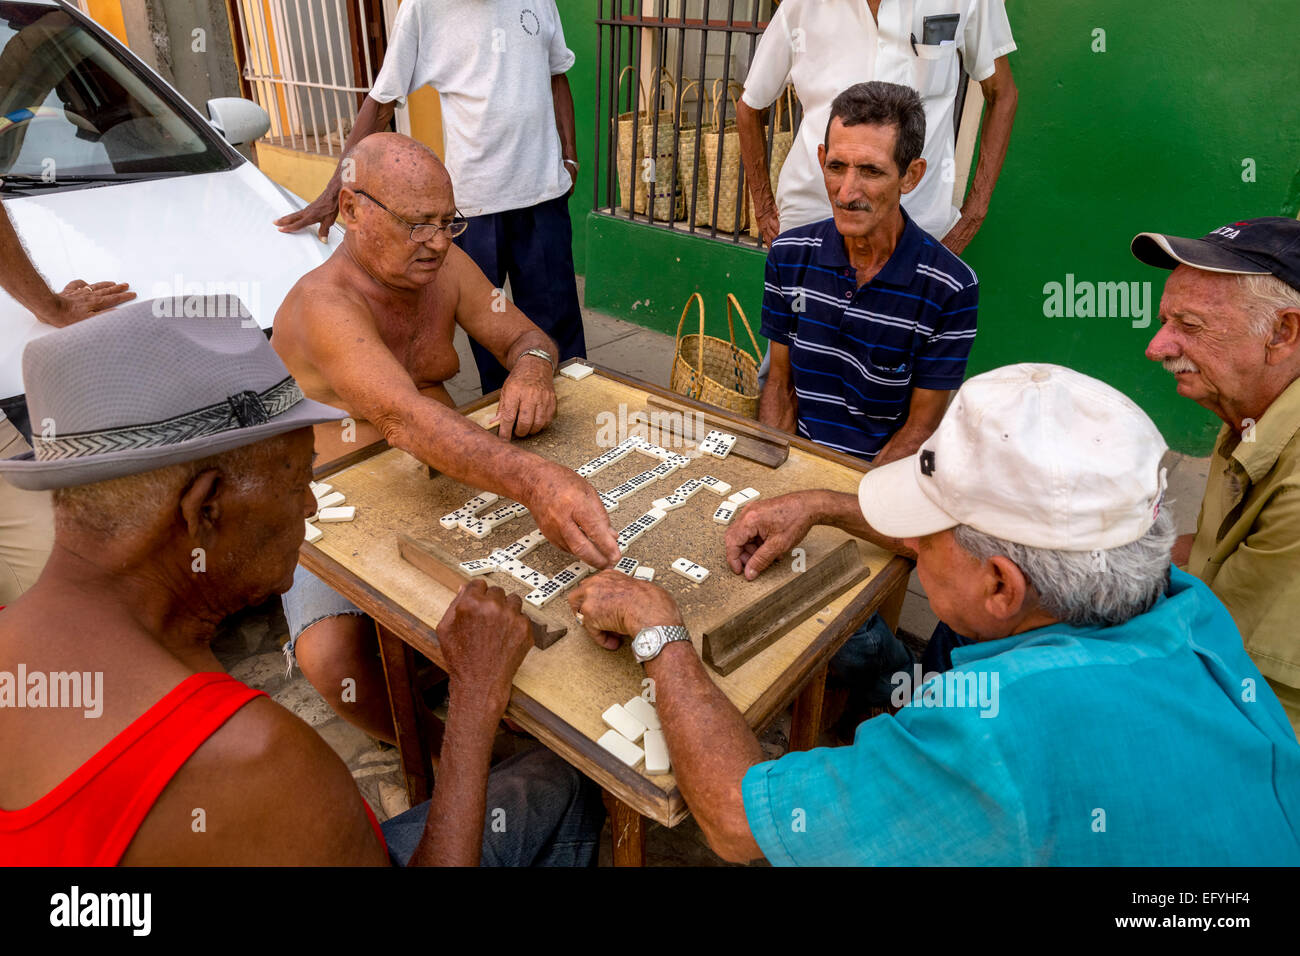 Les hommes cubains jouer aux dominos sur une table à l'extérieur, la vieille ville, la Trinité, la province de Sancti Spiritus, Cuba Banque D'Images